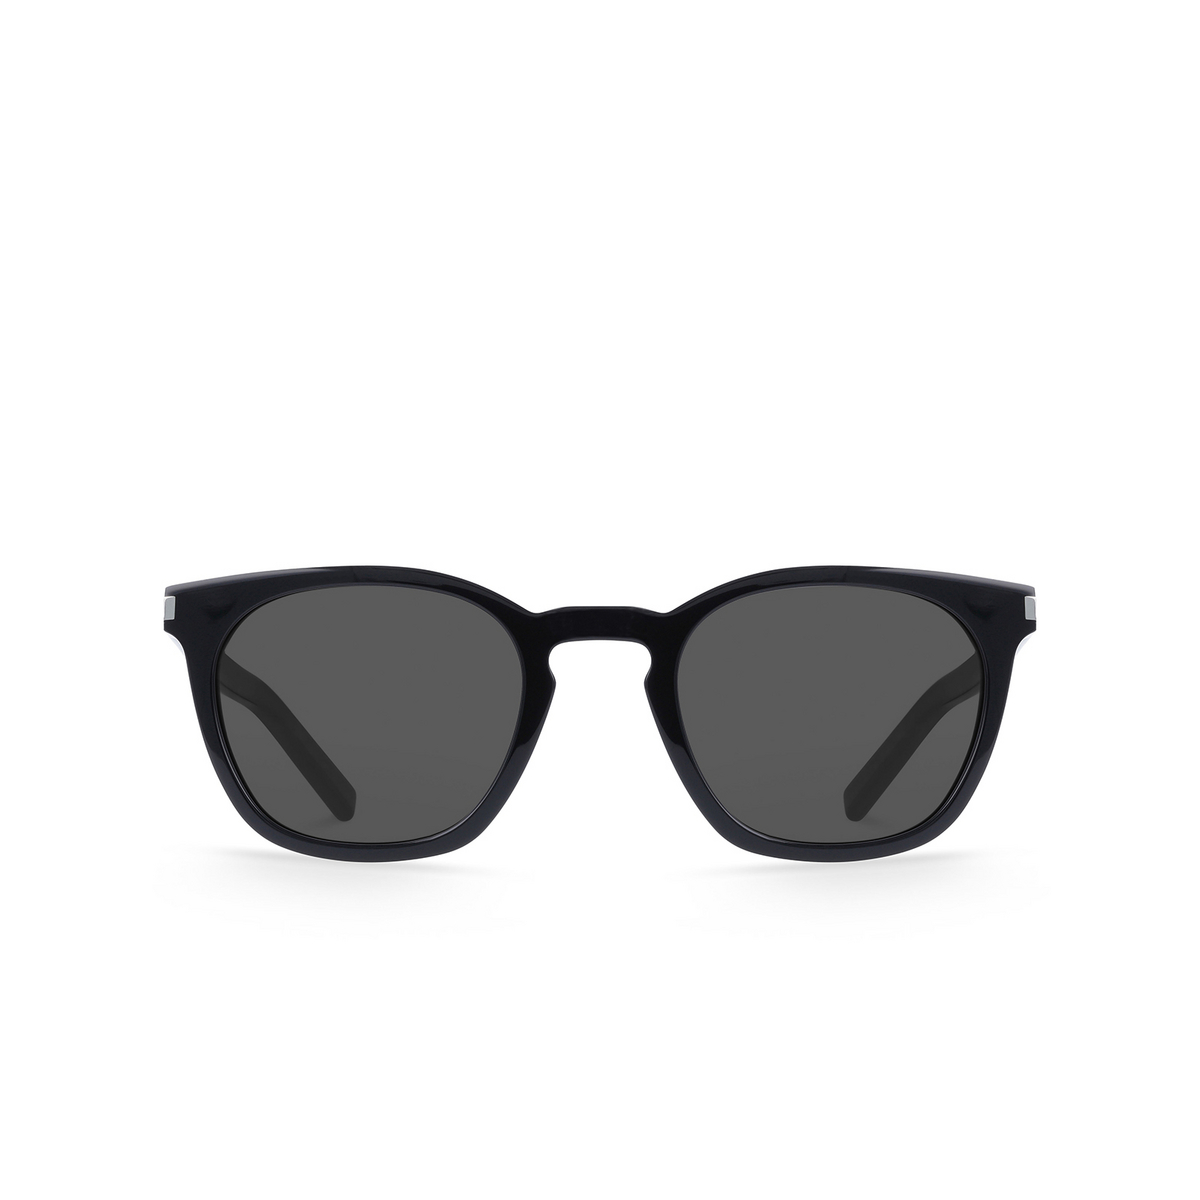 Saint Laurent SL 28 Sunglasses 002 Black - front view